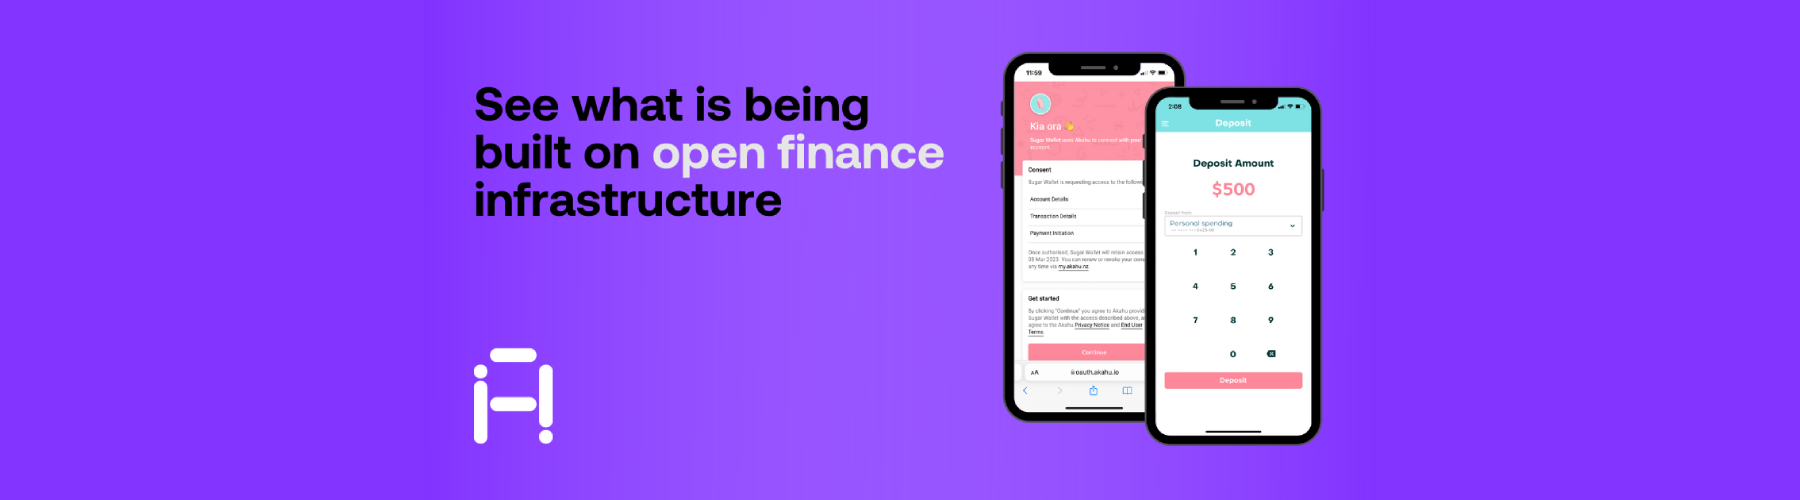 NZ open finance